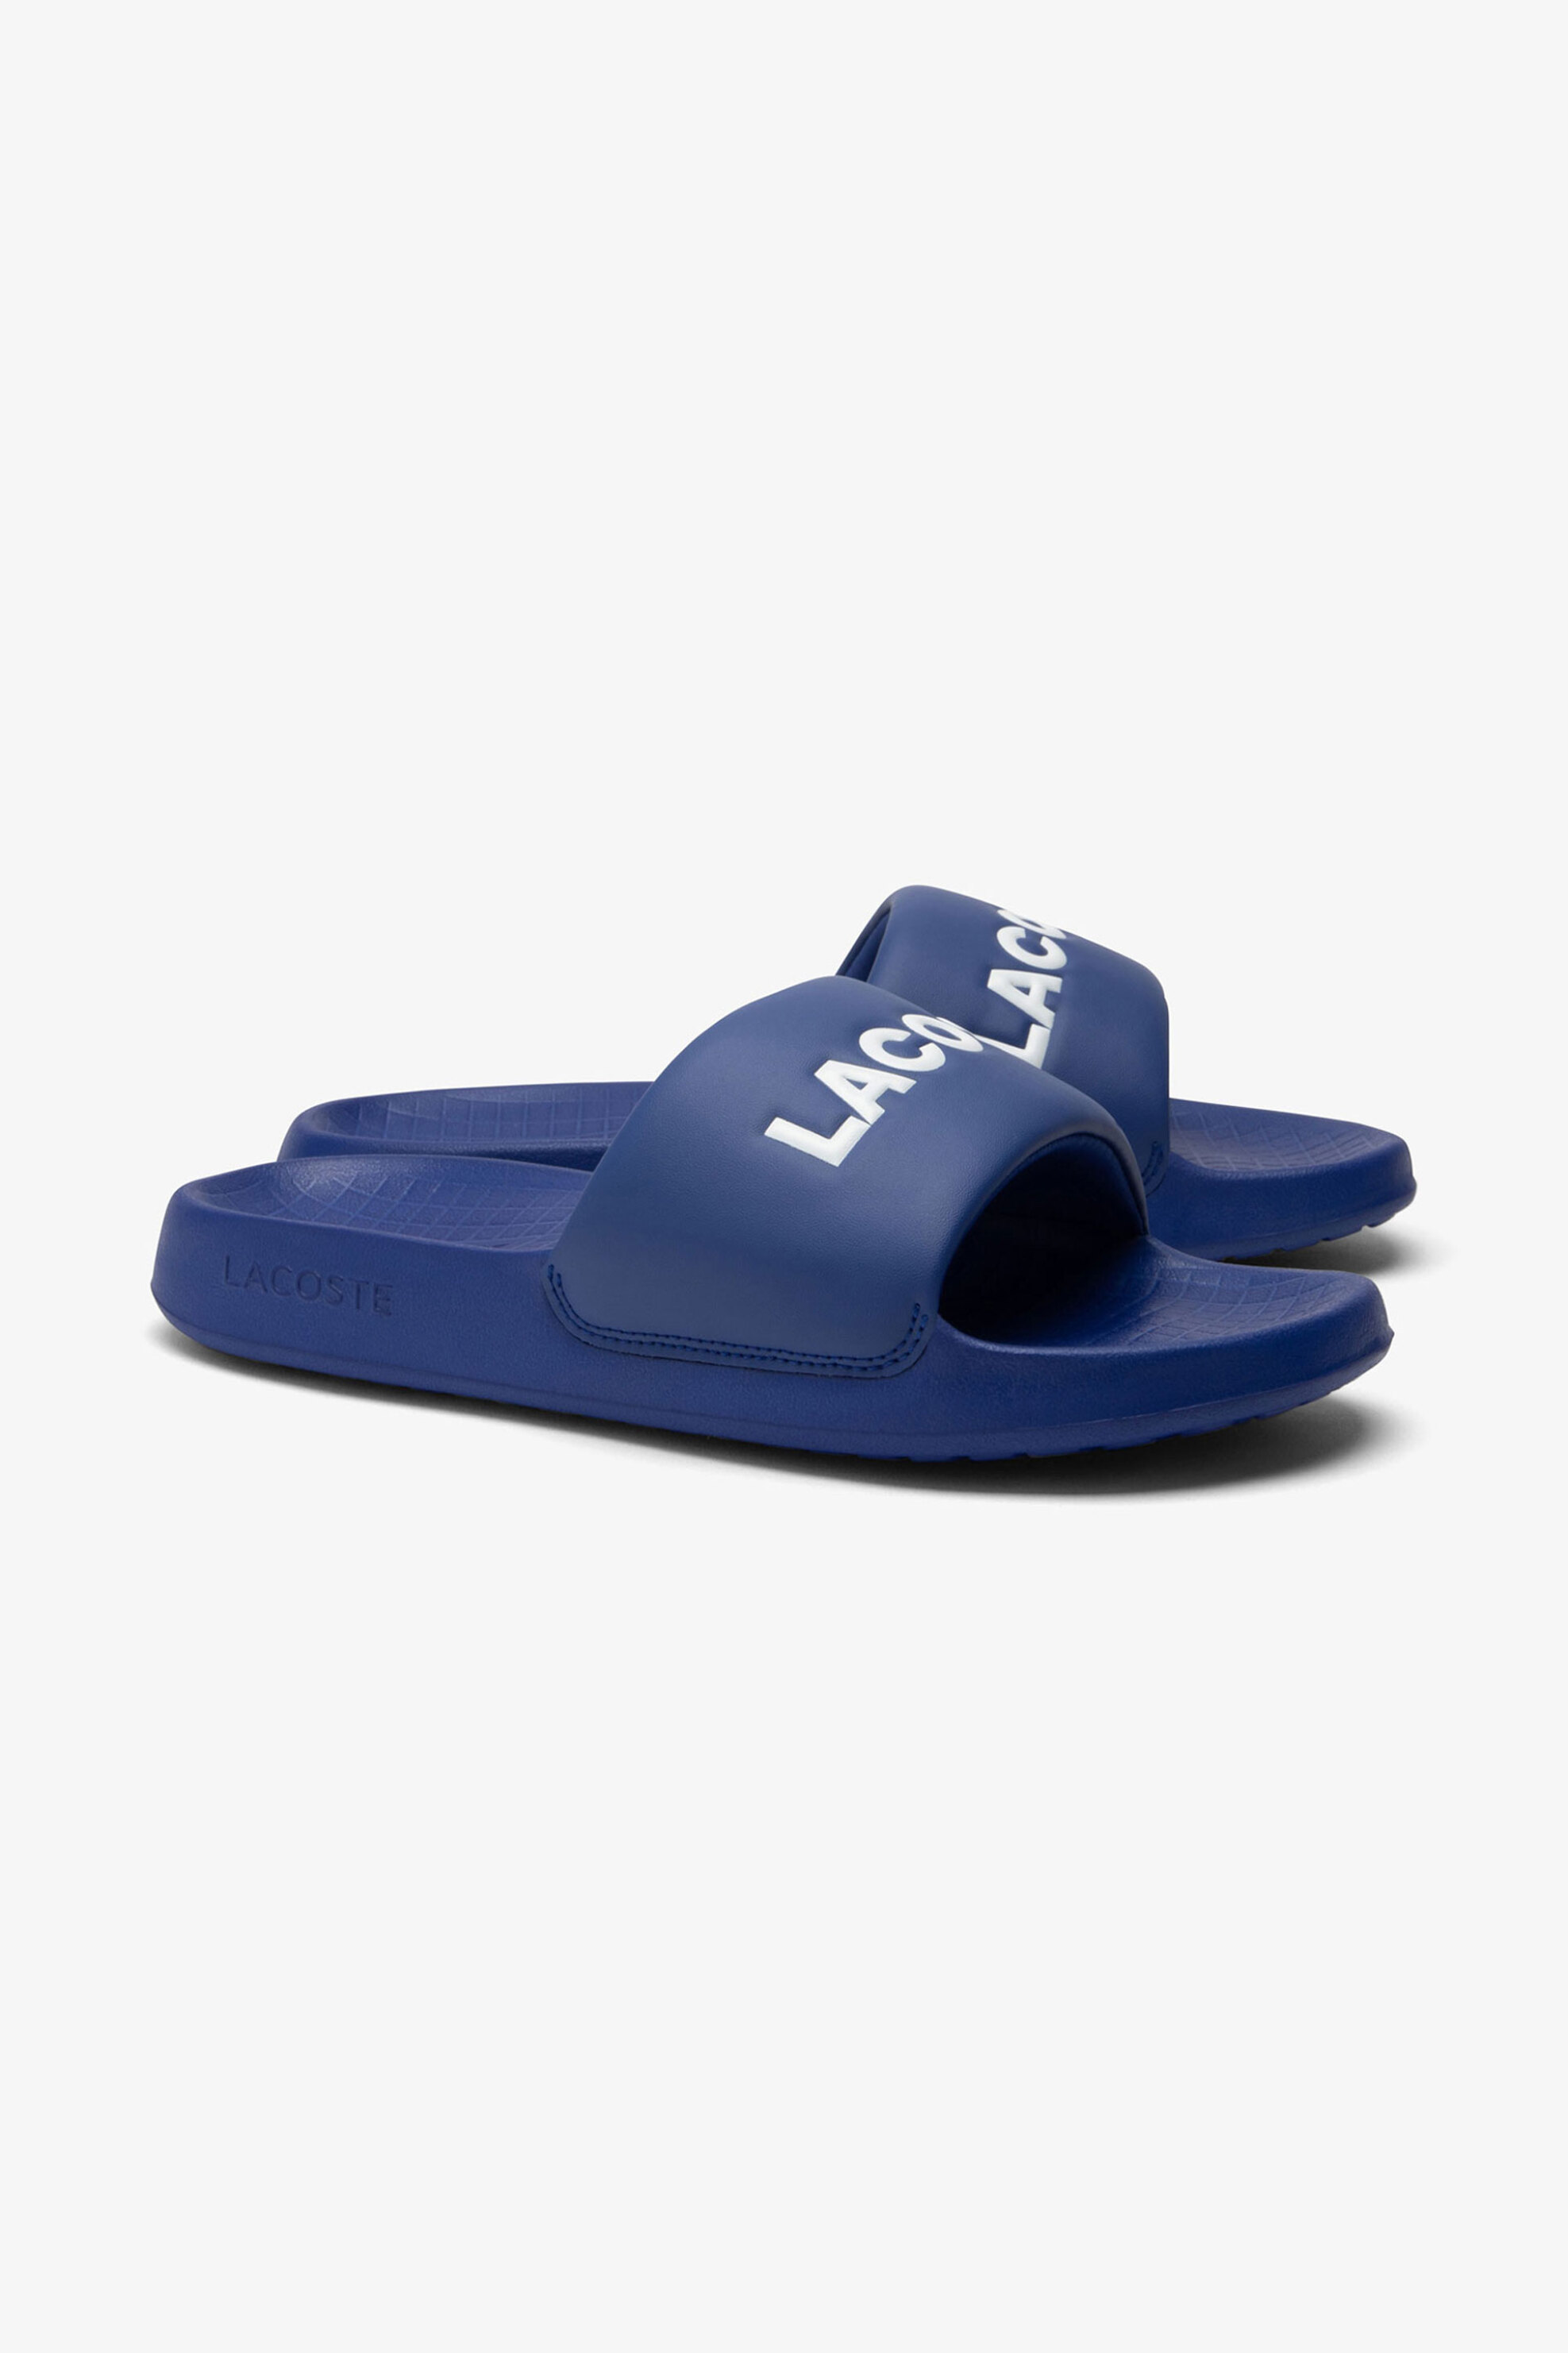 Ανδρική Μόδα > Ανδρικά Παπούτσια > Ανδρικές Παντόφλες & Σαγιονάρες Lacoste ανδρικές σαγιονάρες με λογότυπο "Serve Slide 1.0" - 47CMA002511C Μπλε